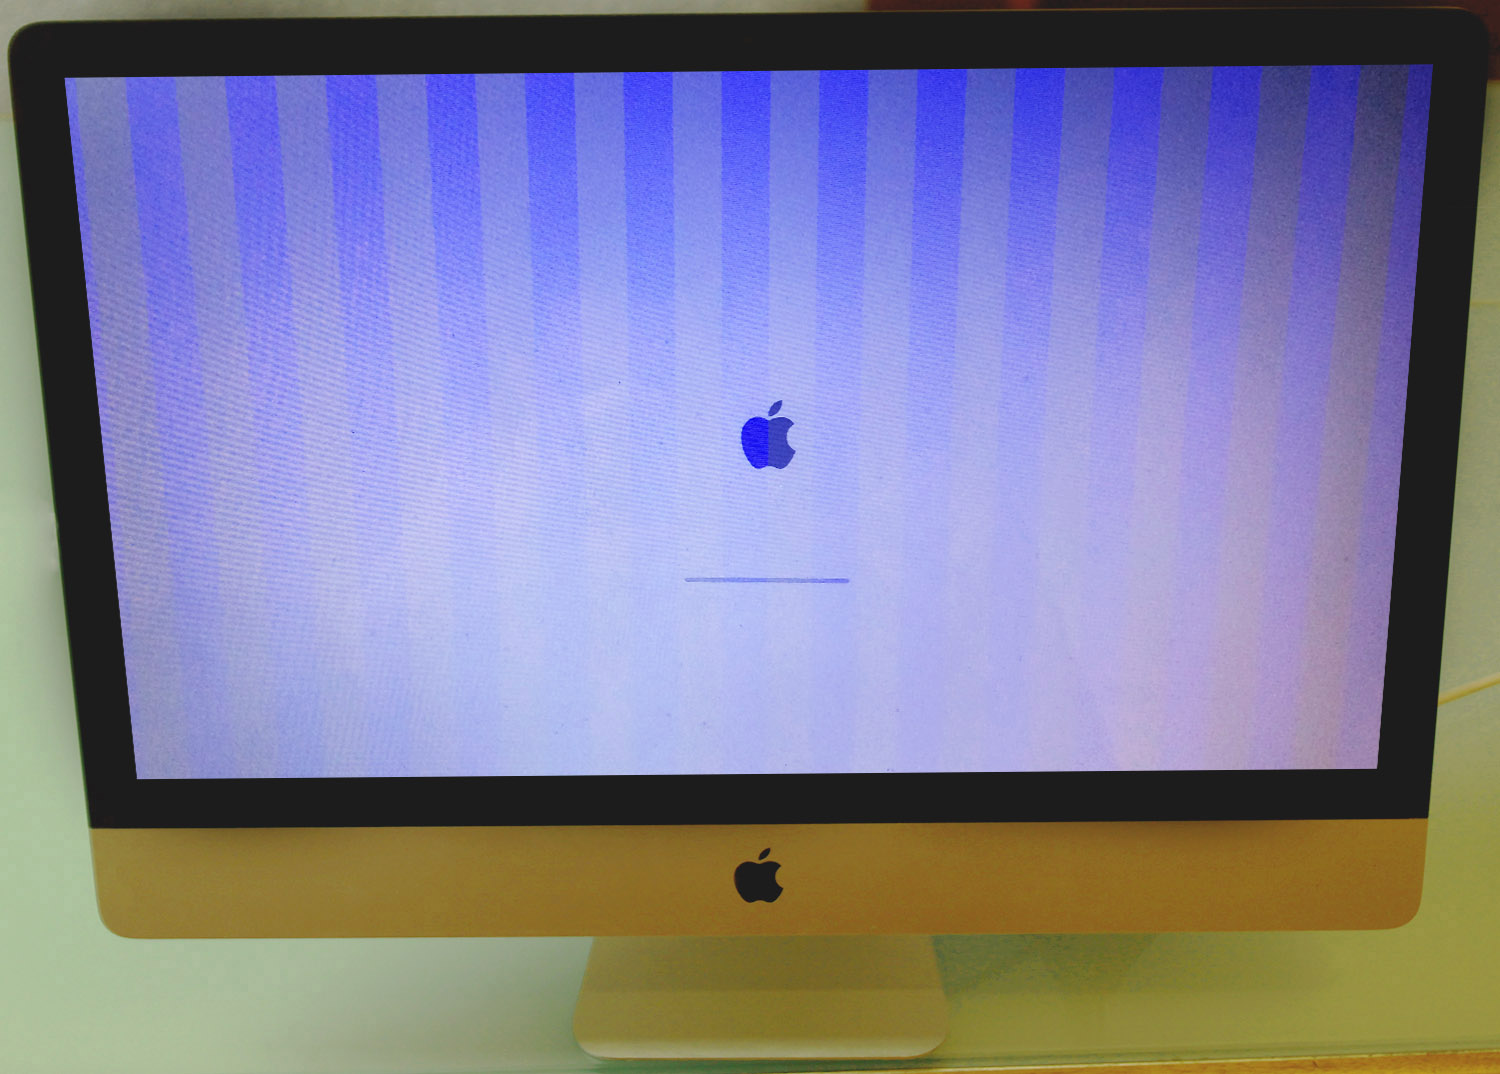 Ein iMac-Display flimmert und flackert aufgrund eines Grafikfehlers